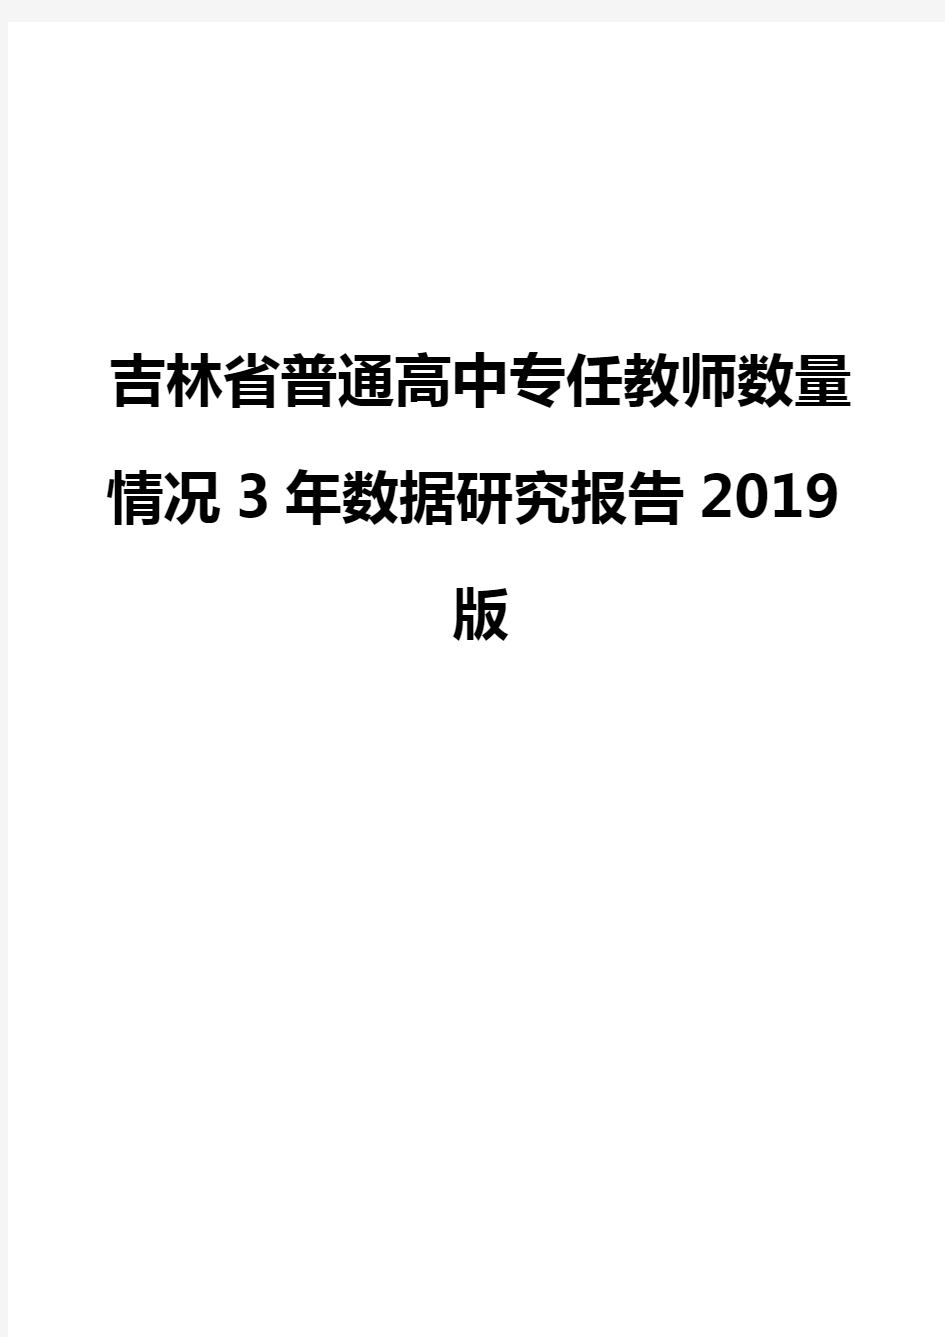 吉林省普通高中专任教师数量情况3年数据研究报告2019版